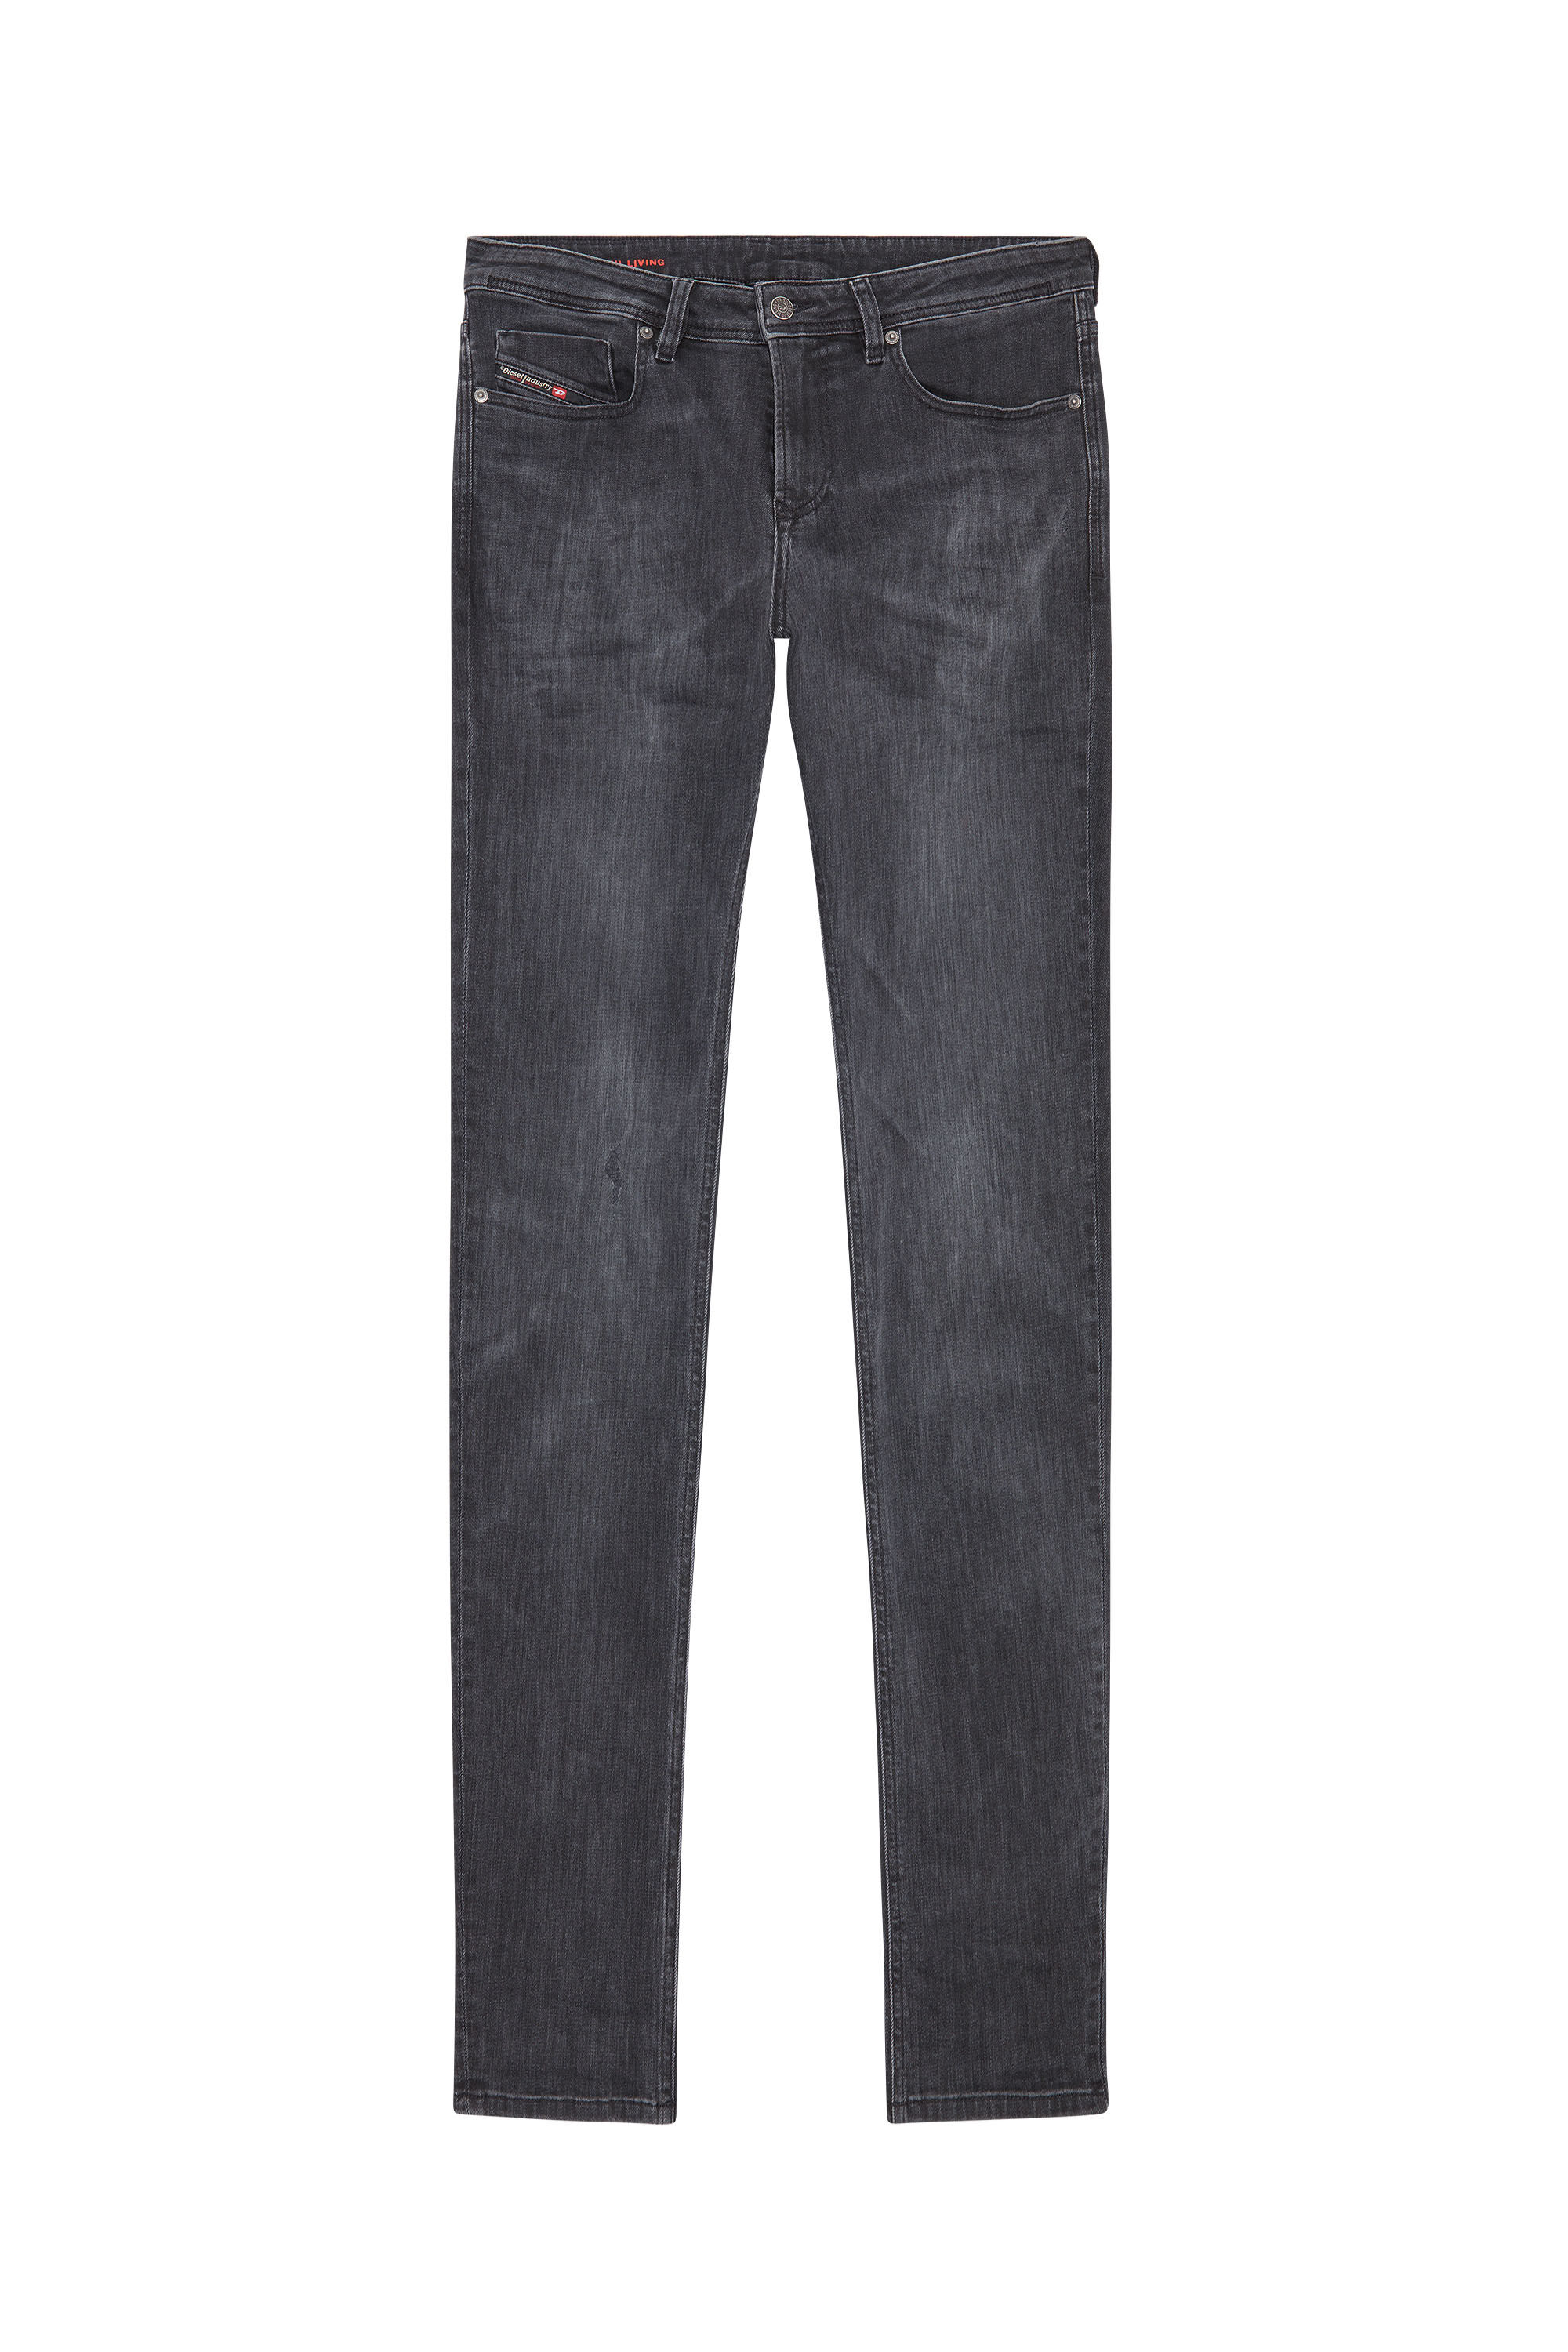 Diesel - Skinny Jeans 1979 Sleenker 0TFAR, Black/Dark grey - Image 2